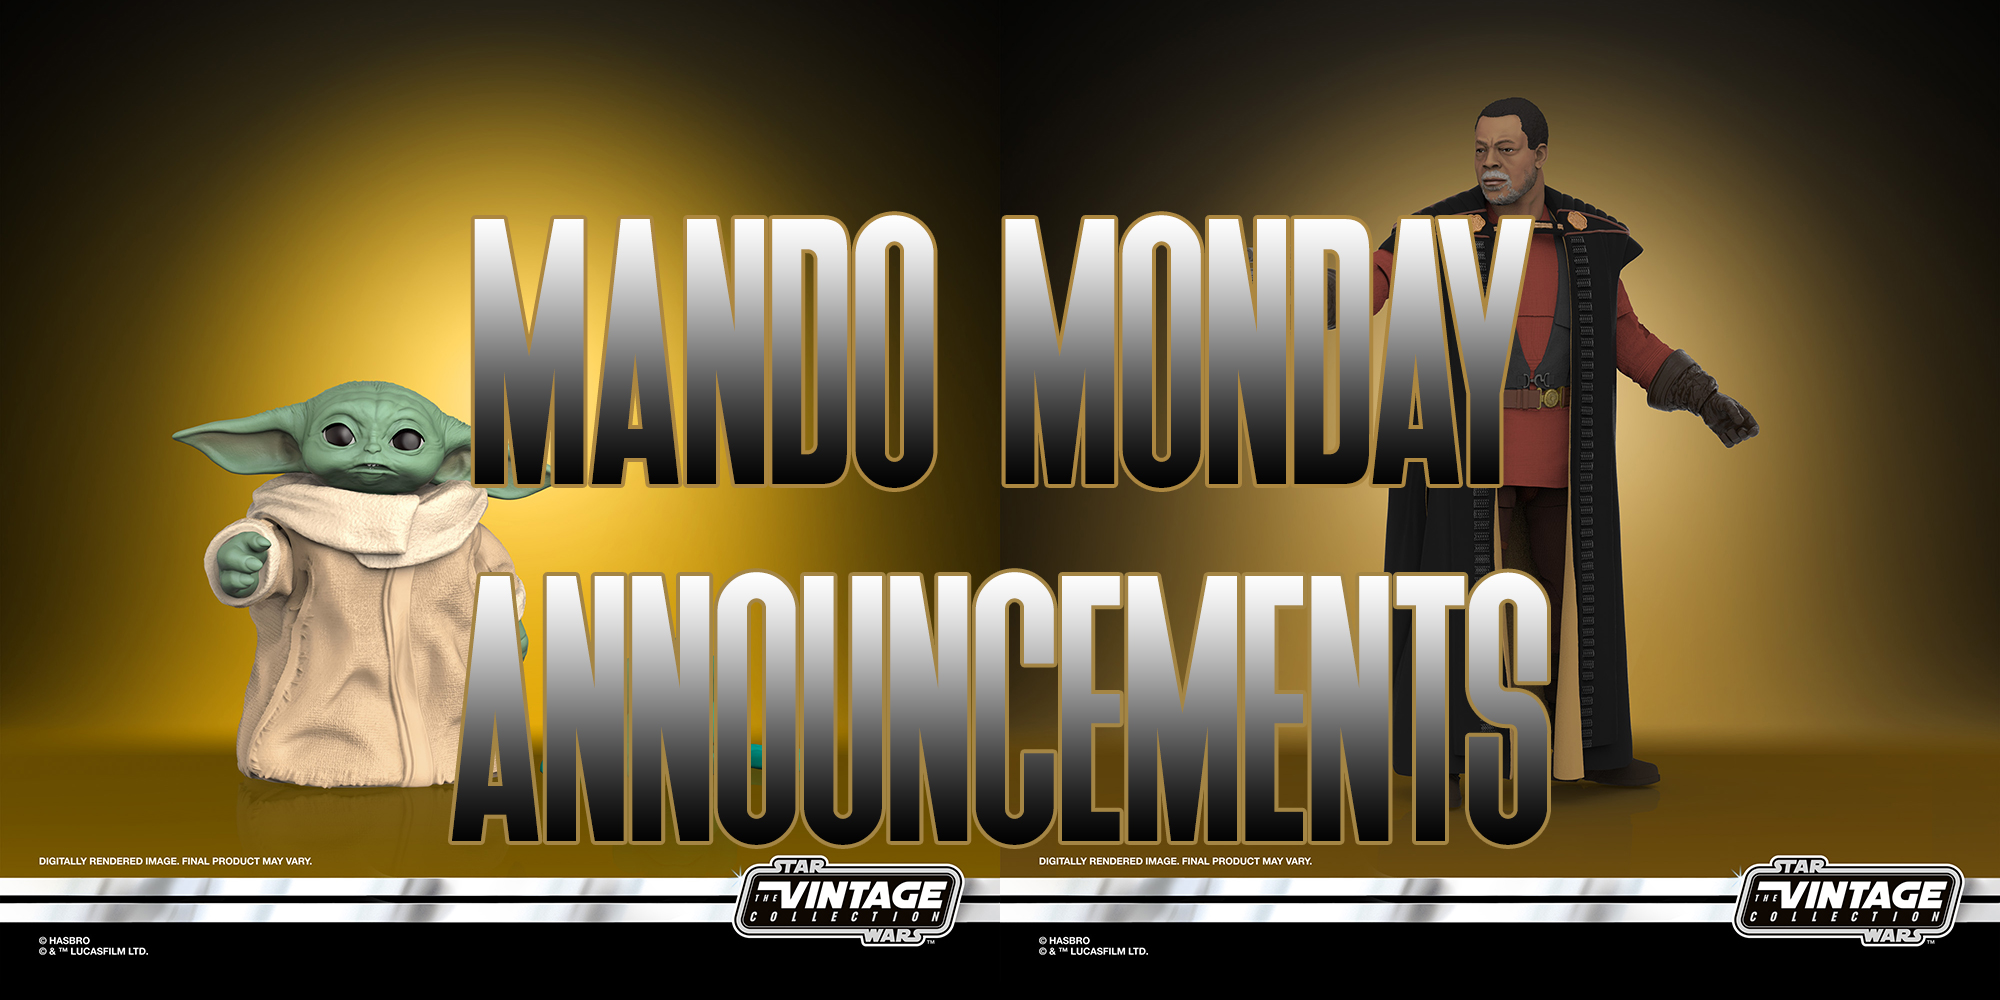 Mando Monday Reveals